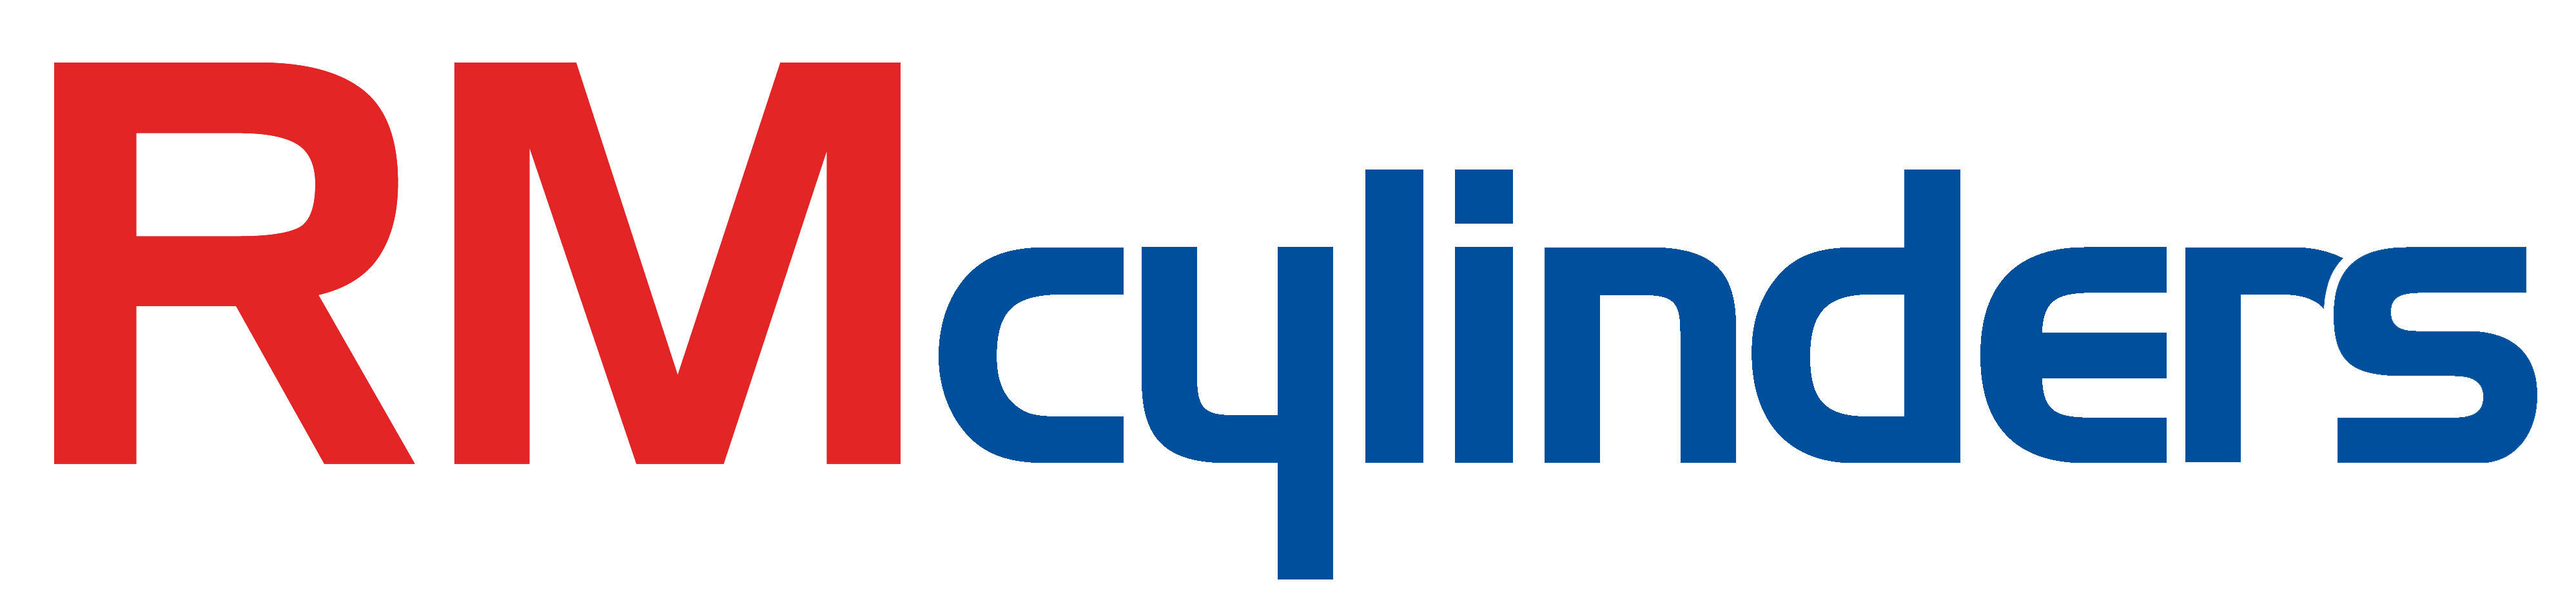 Blue Cylinder Logo - Direct Prostel Cylinder | RM Cylinders